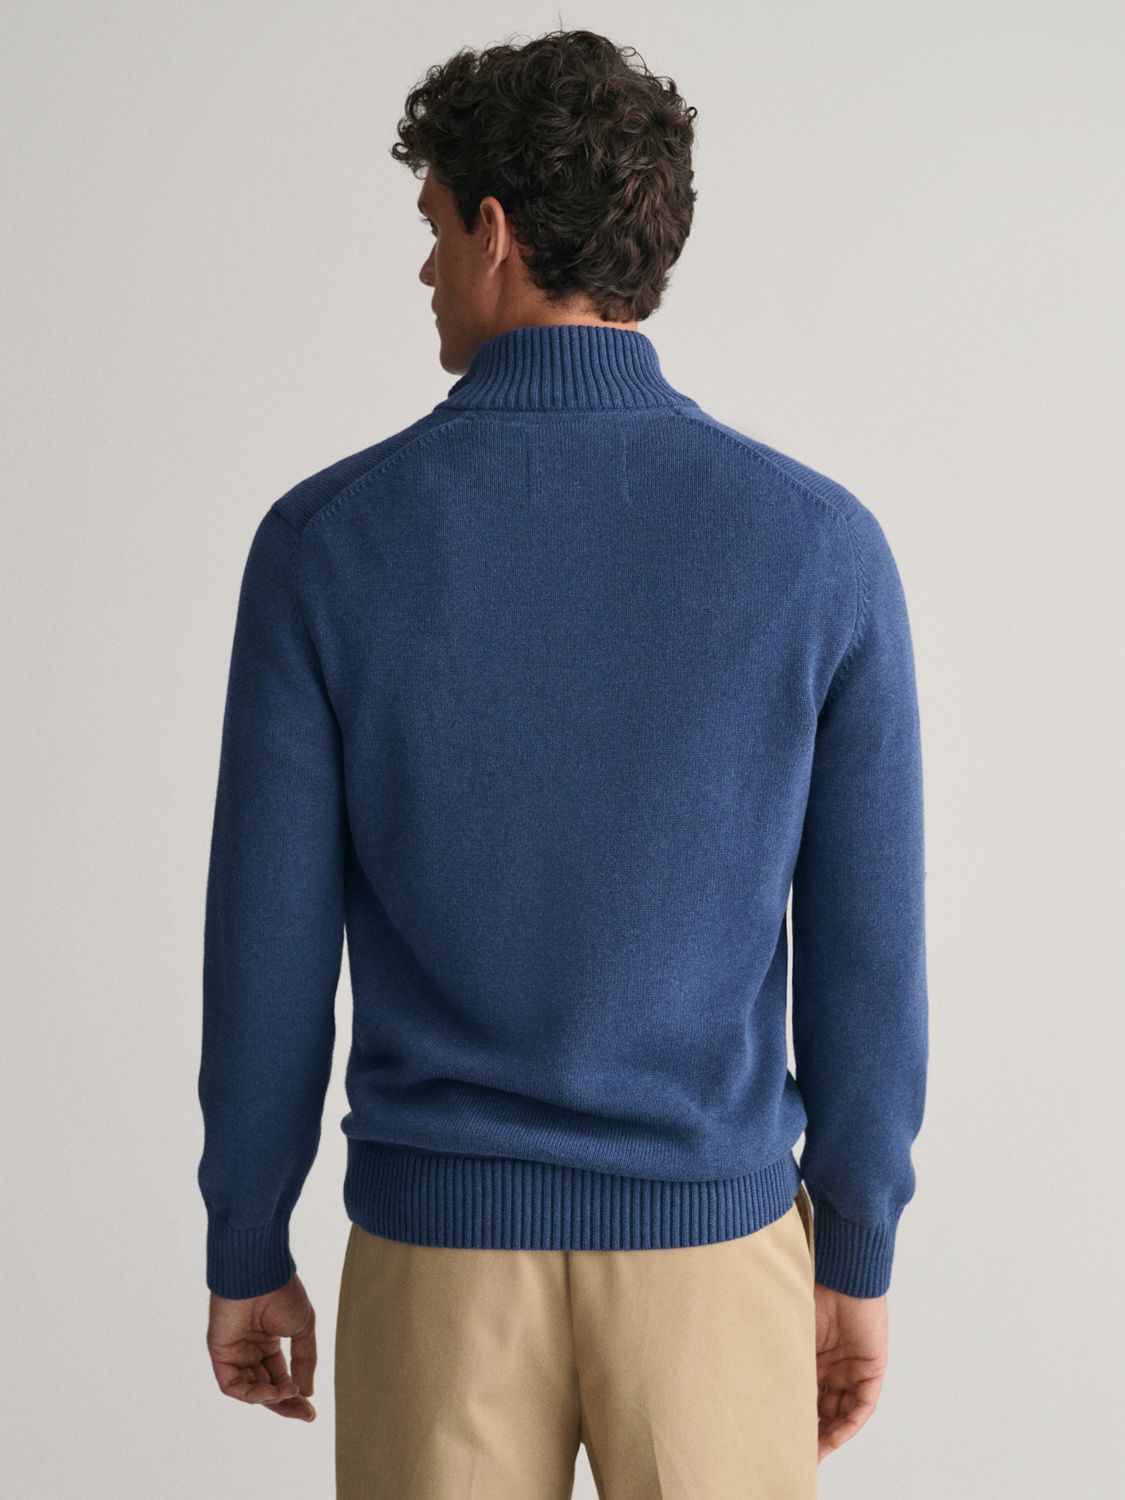 GANT Cotton Half Zip Collar Jumper, Blue Melange, S